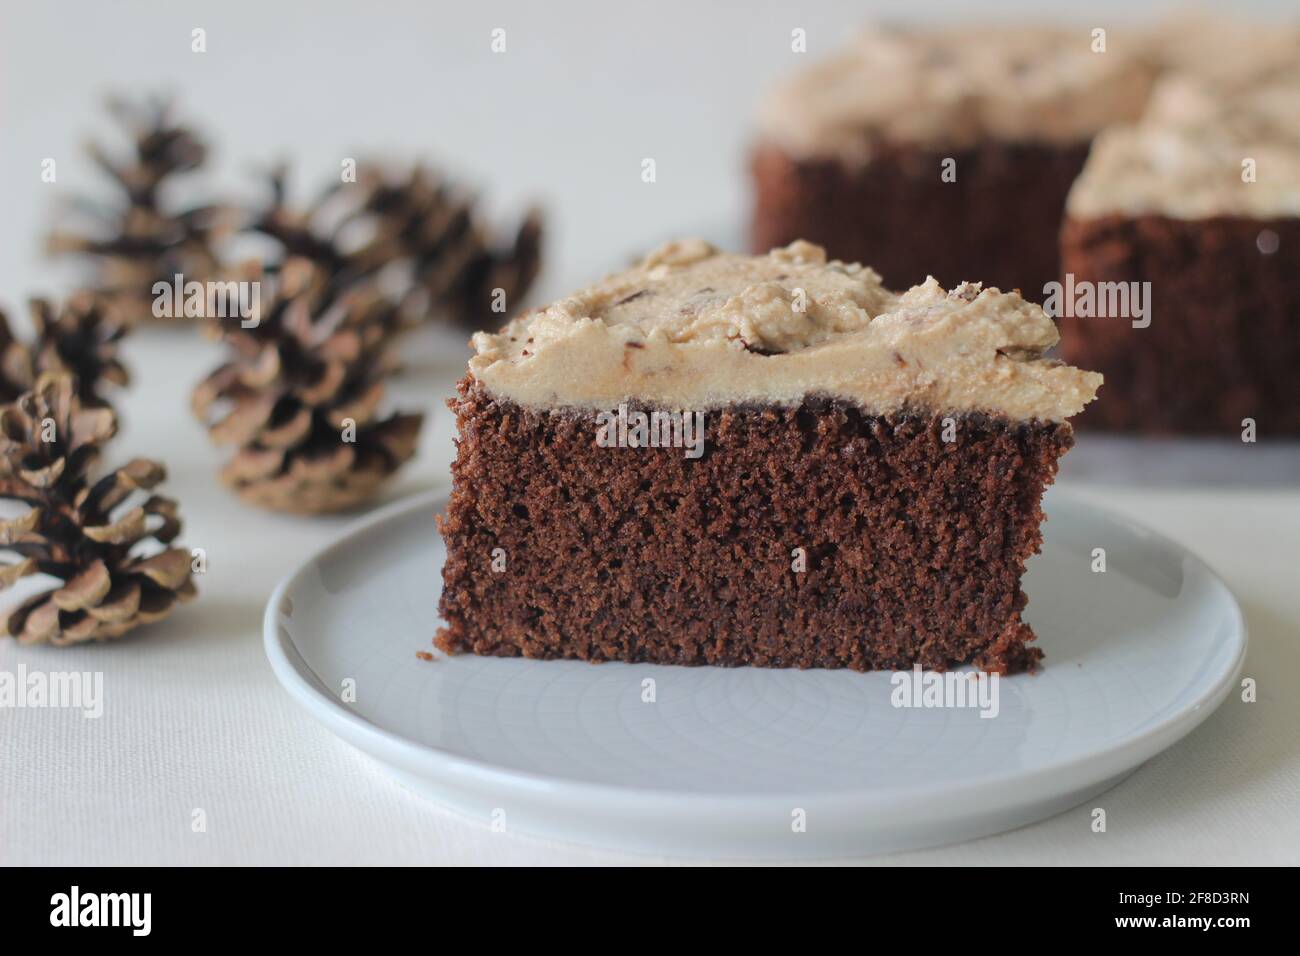 In Scheiben geschnittener Schokoladenkuchen mit Vanillebutter-Glasur, gemischt mit Schokolade als Belag. Aufgenommen auf weißem Hintergrund. Stockfoto